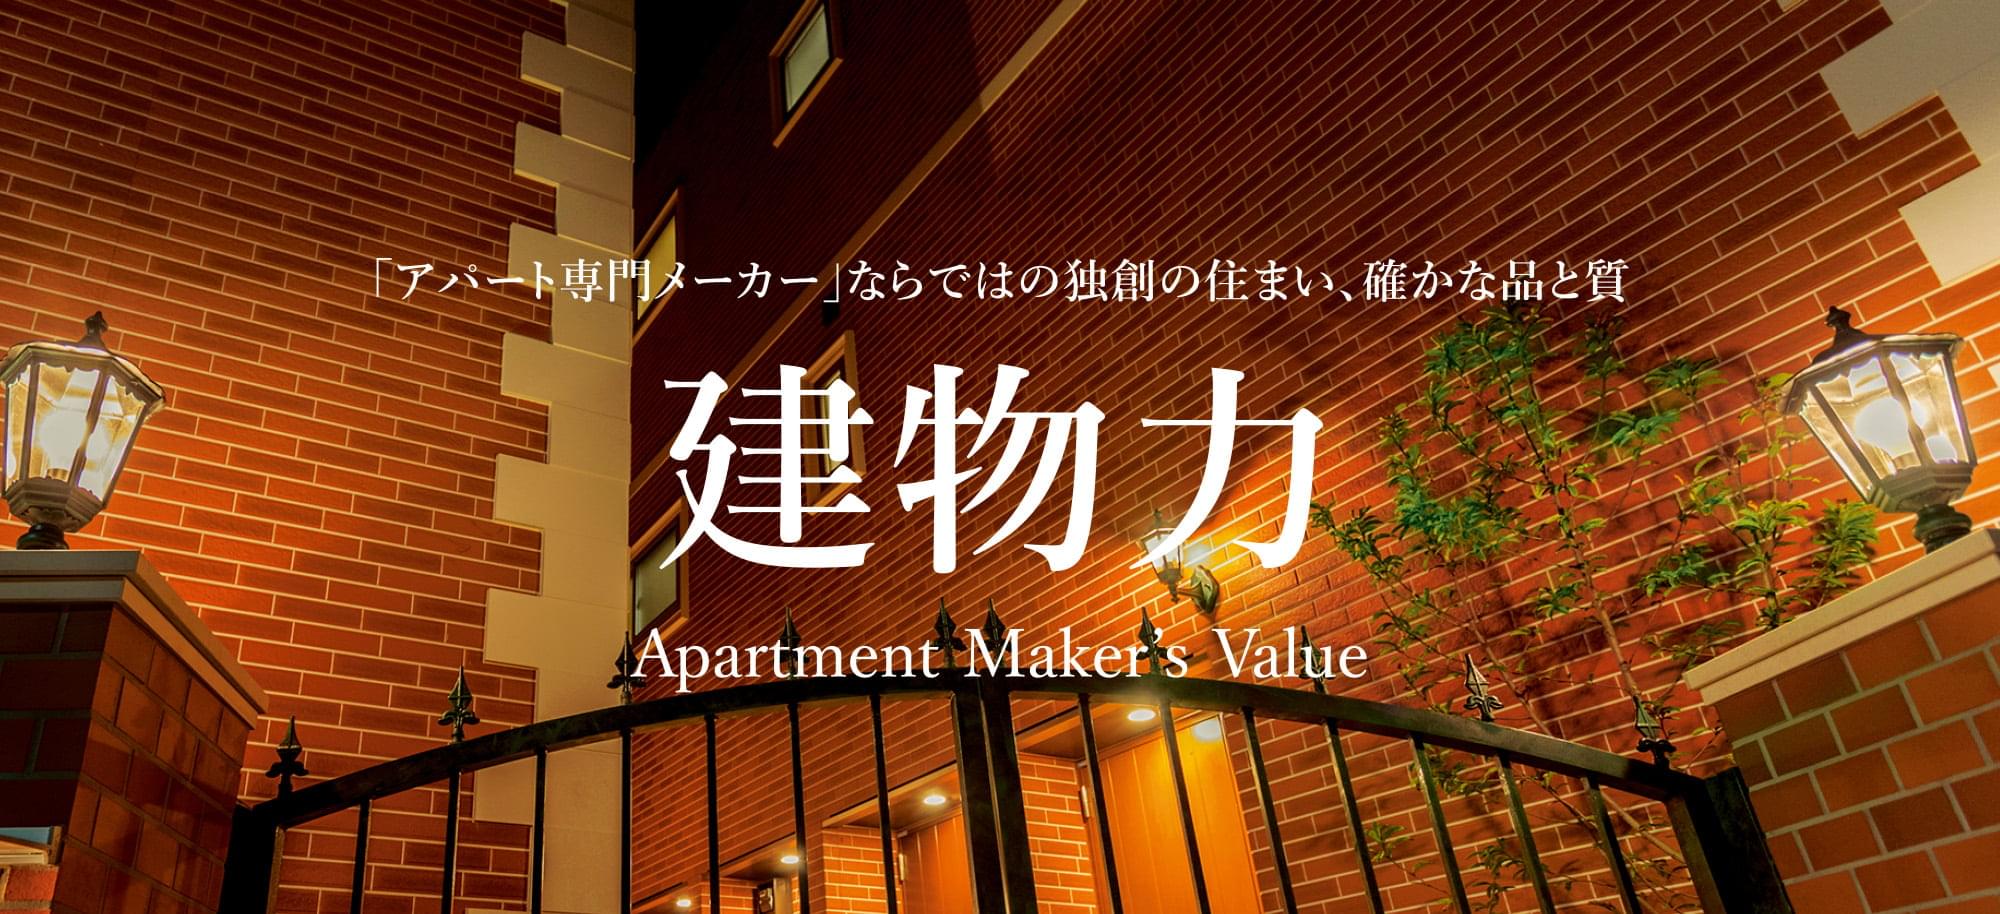 「アパート専門メーカー」ならではの独創の住まい、確かな品と質「建物力」